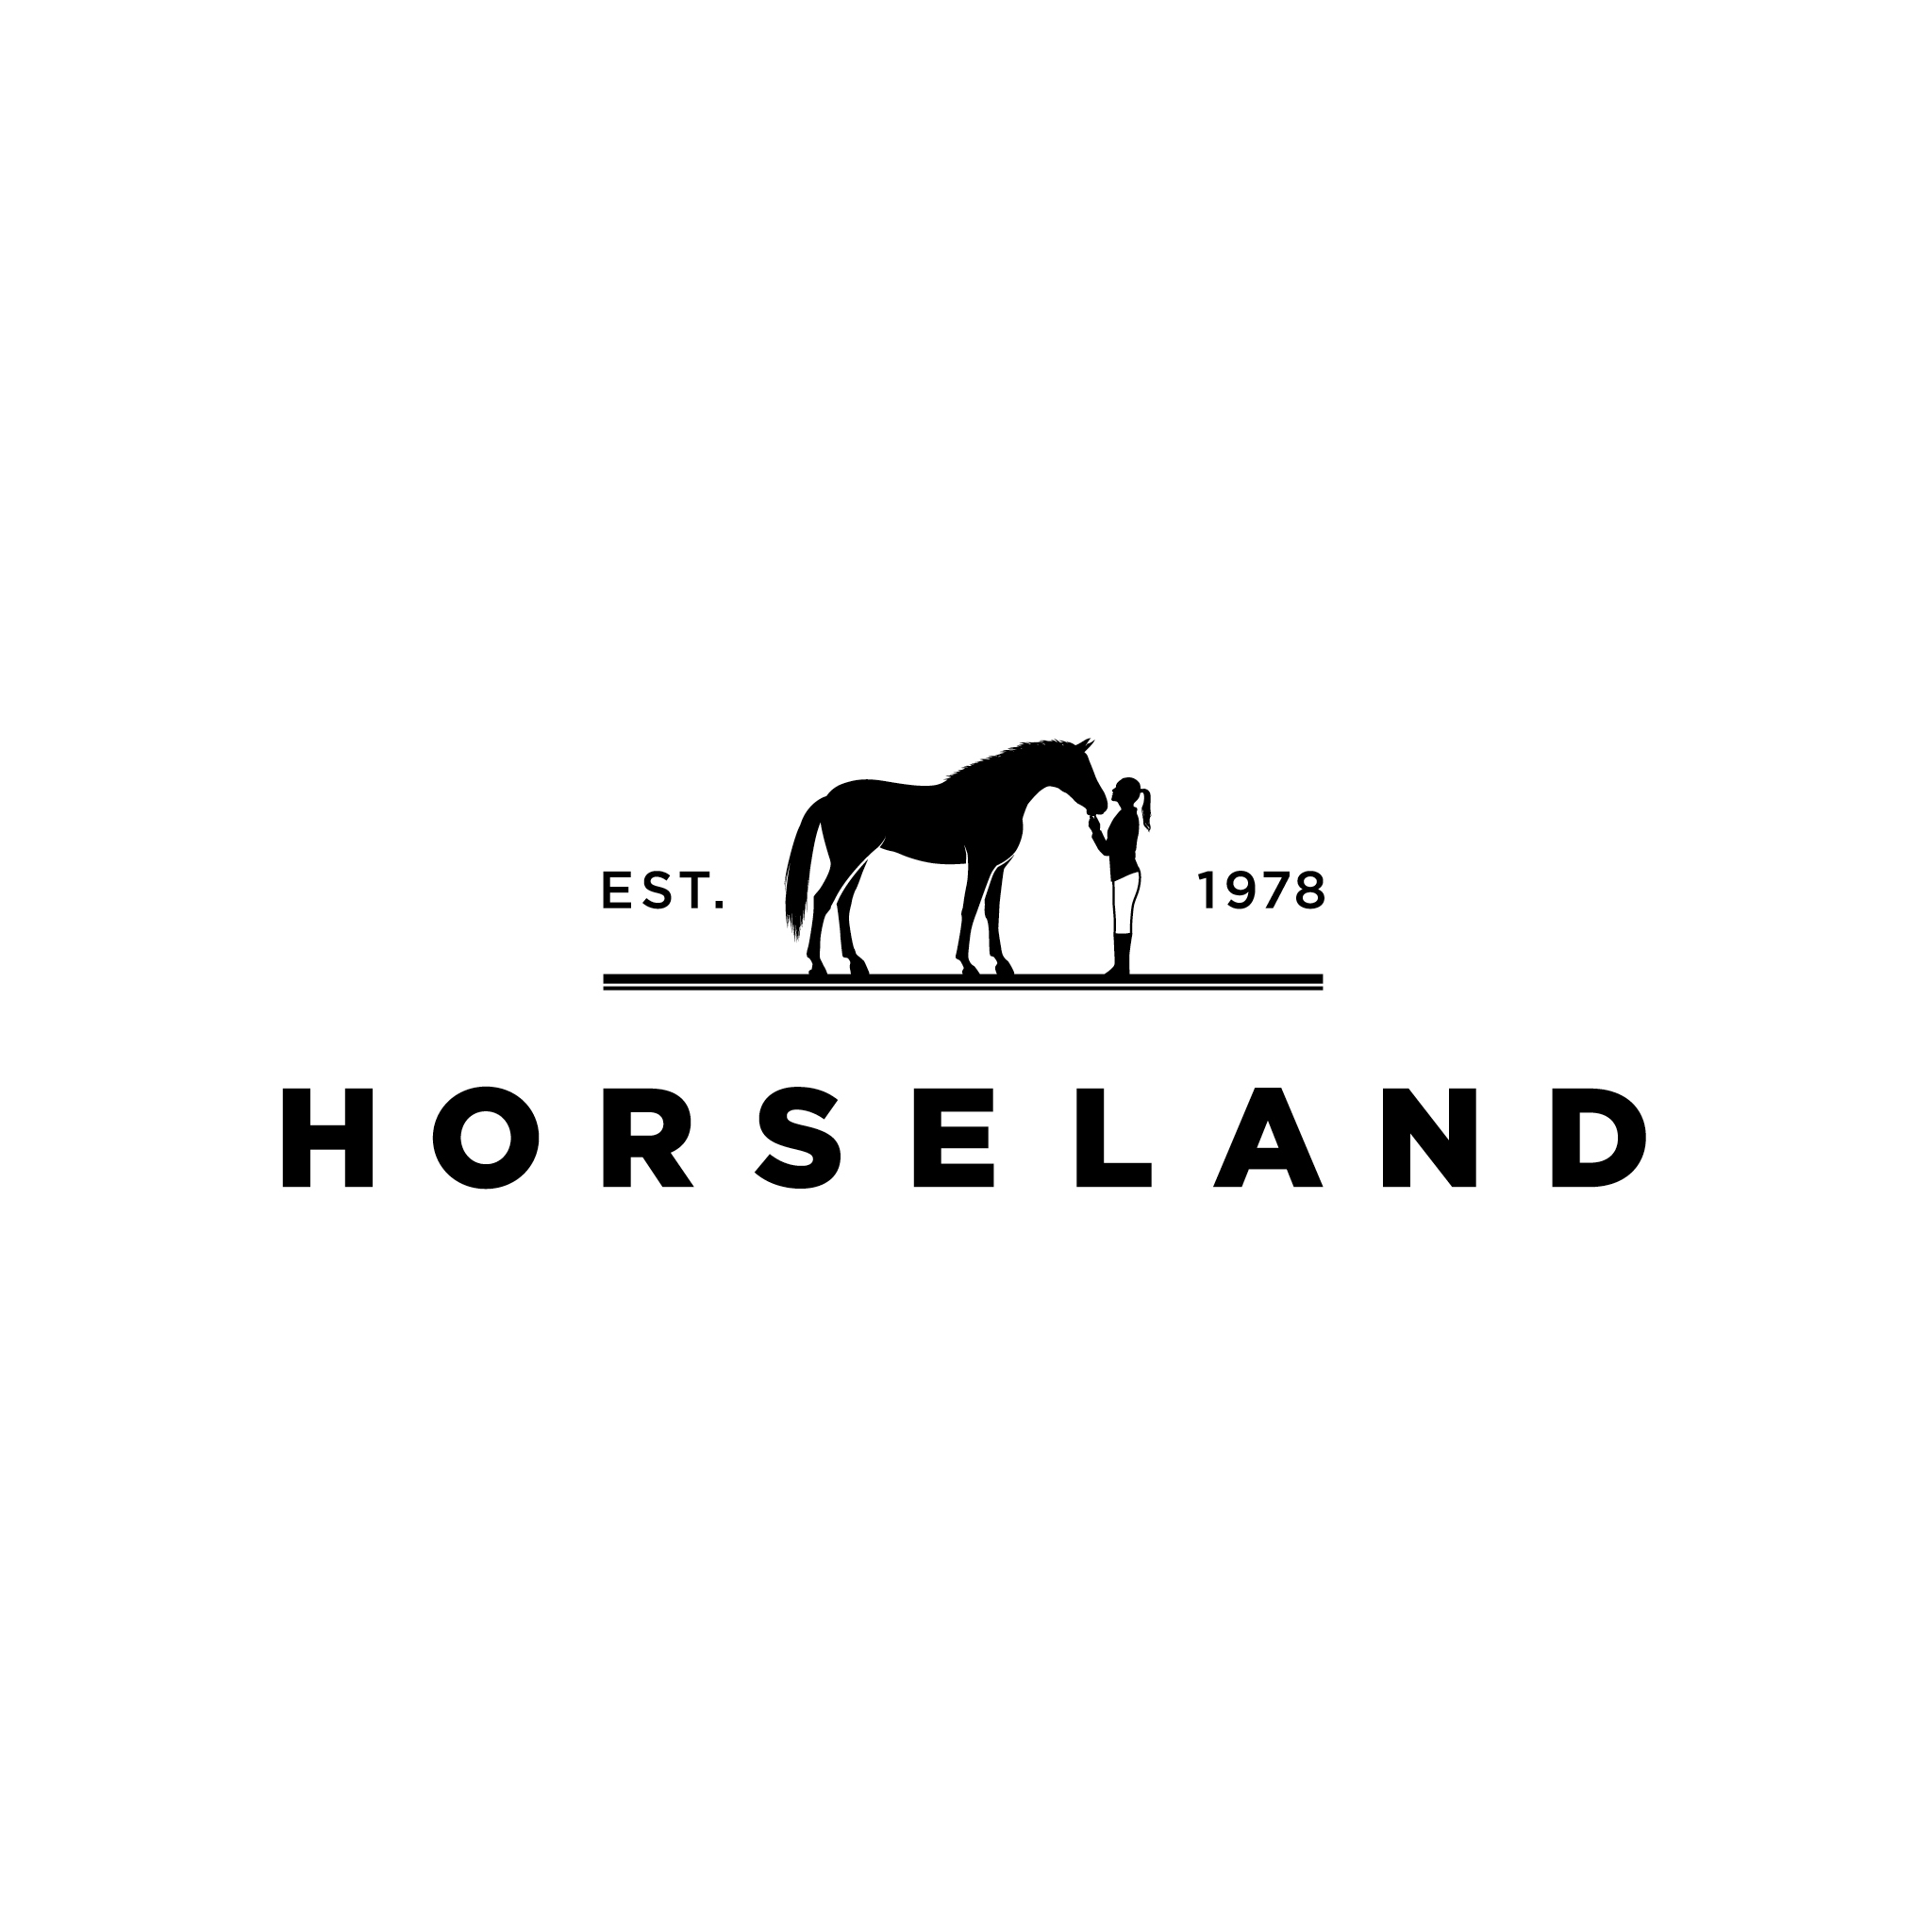 Company logo of Horseland